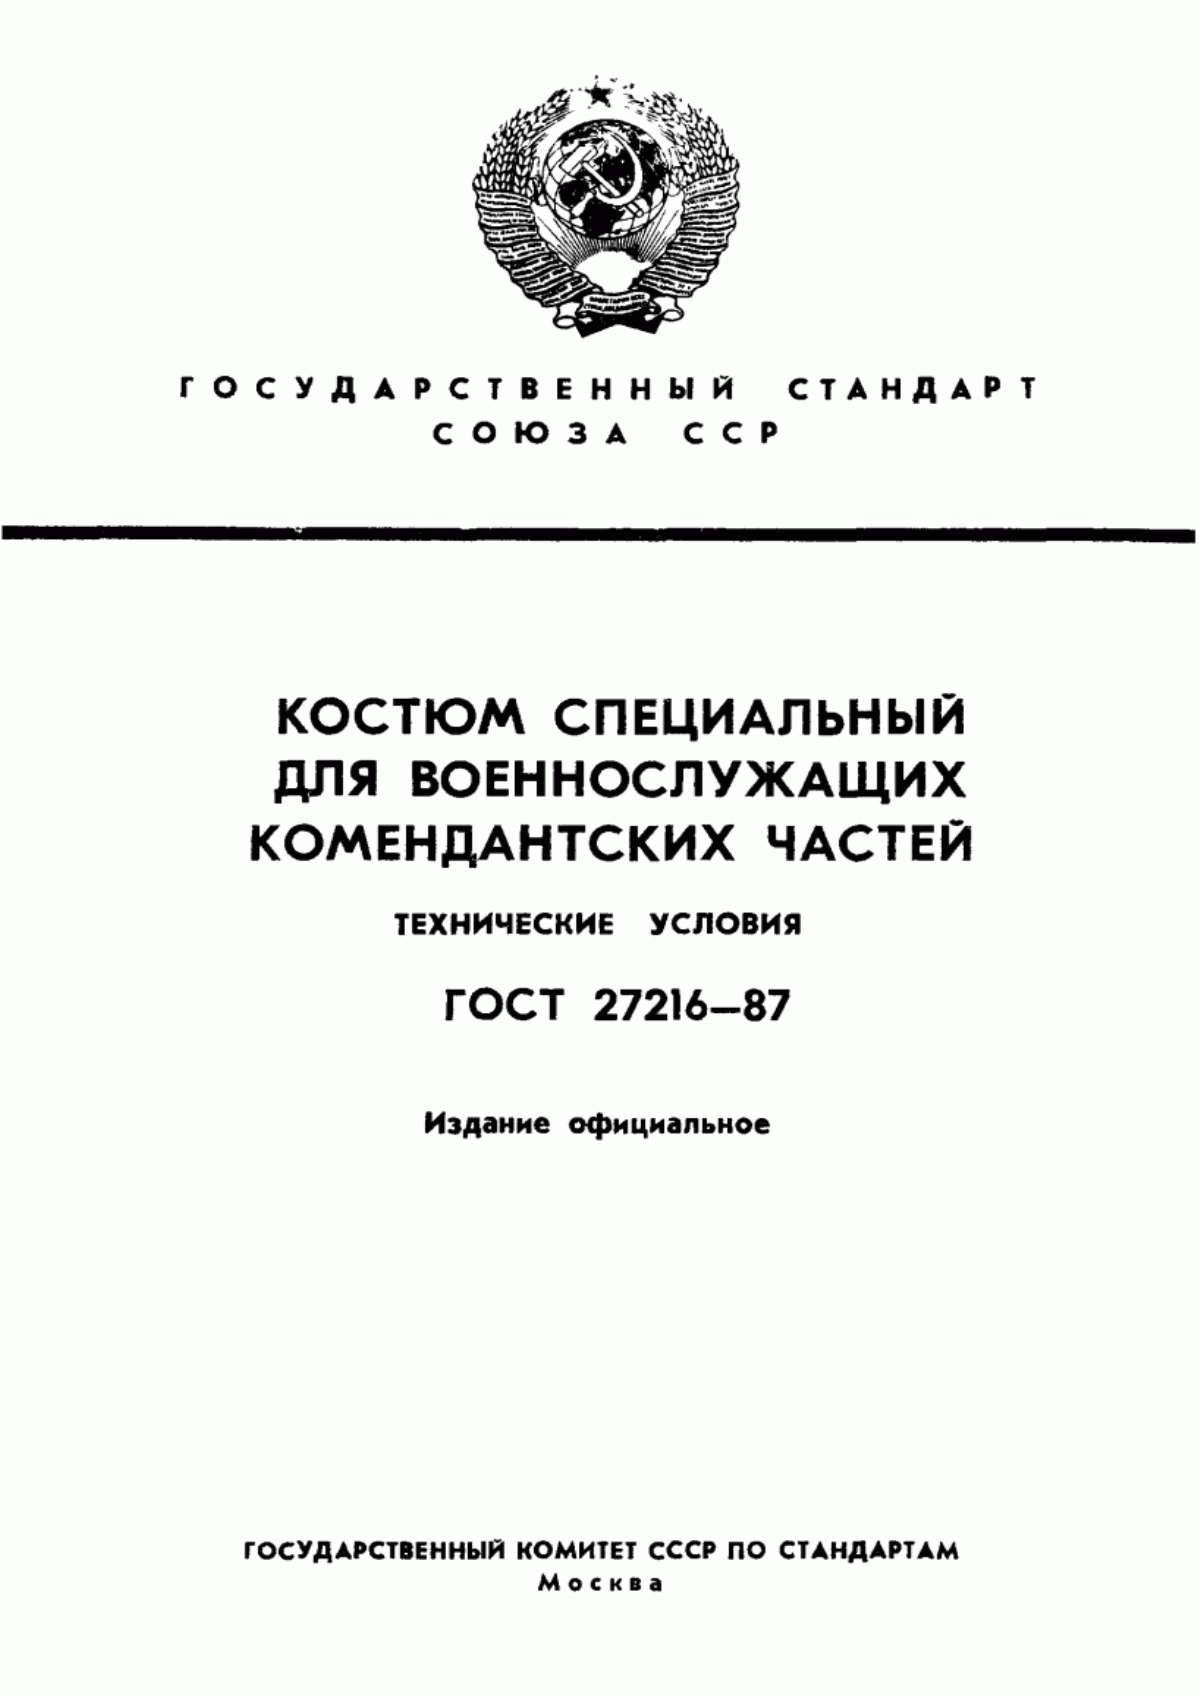 ГОСТ 27216-87 Костюм специальный для военнослужащих комендантских частей. Технические условия